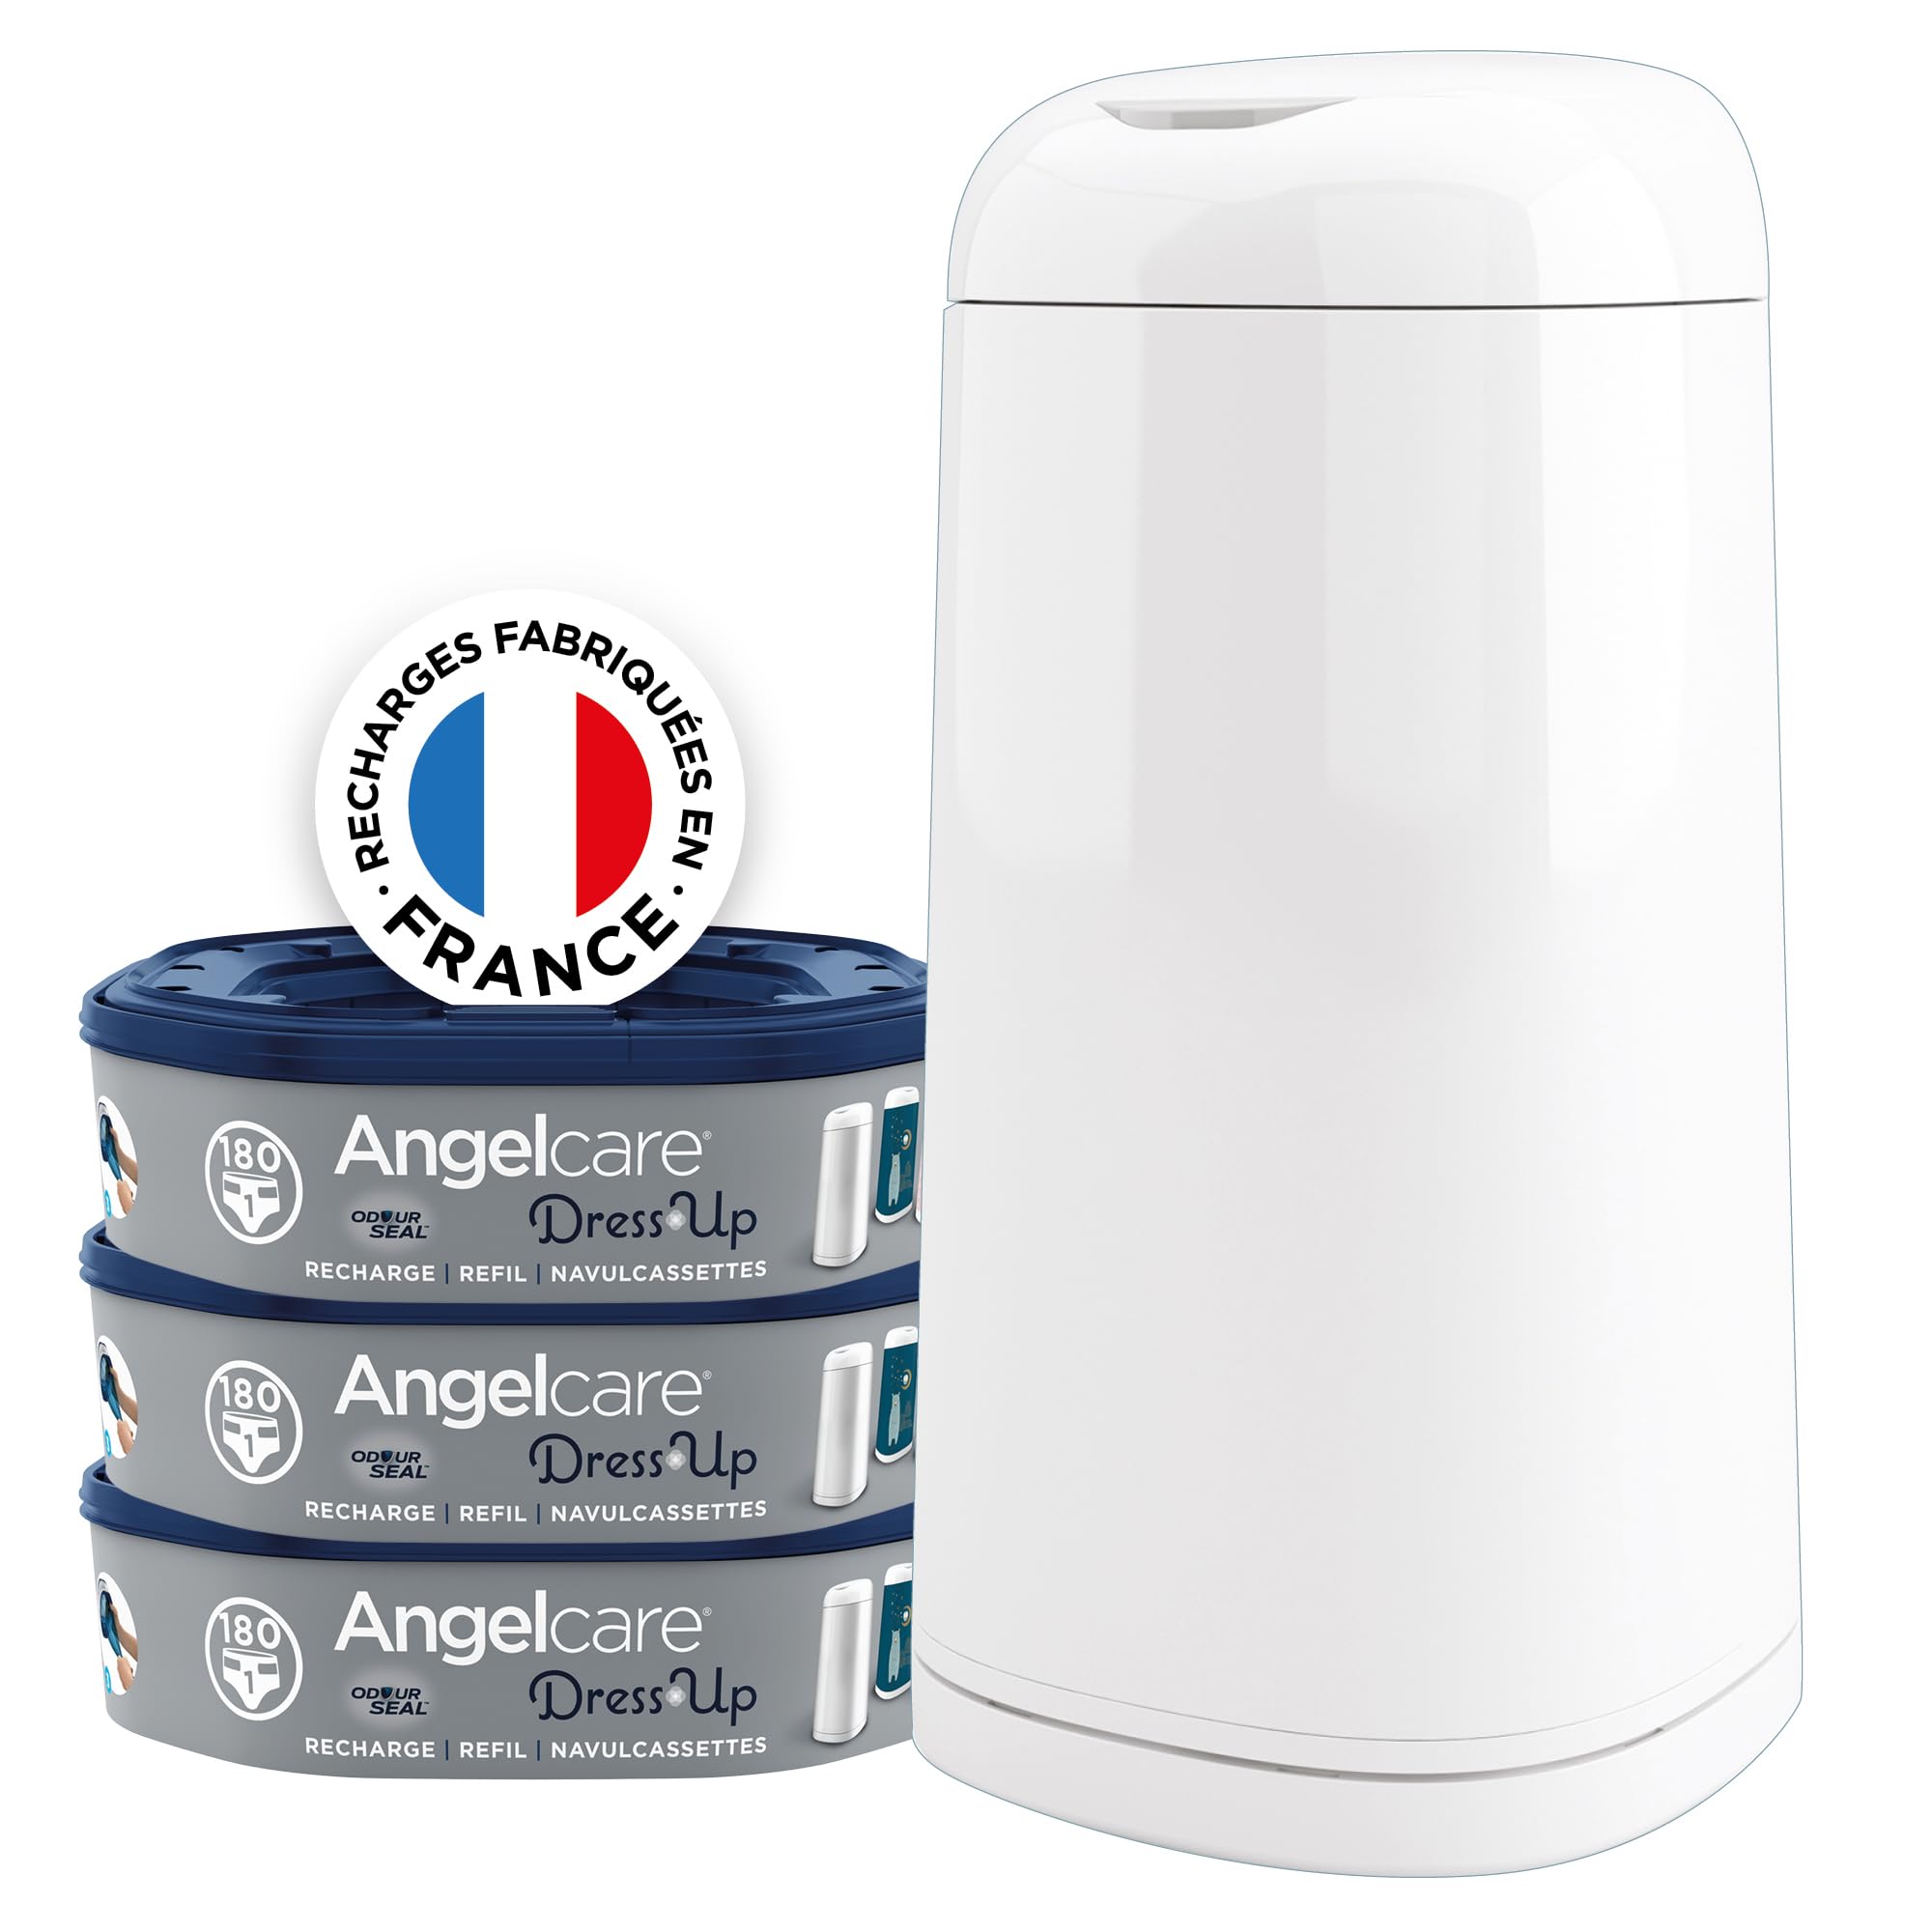 Angelcare Windeleimer + 3 Nachfüllpackungen gegen Gerüche, hohe Kapazität, antibakteriell, einfache Verwendung, Weiß